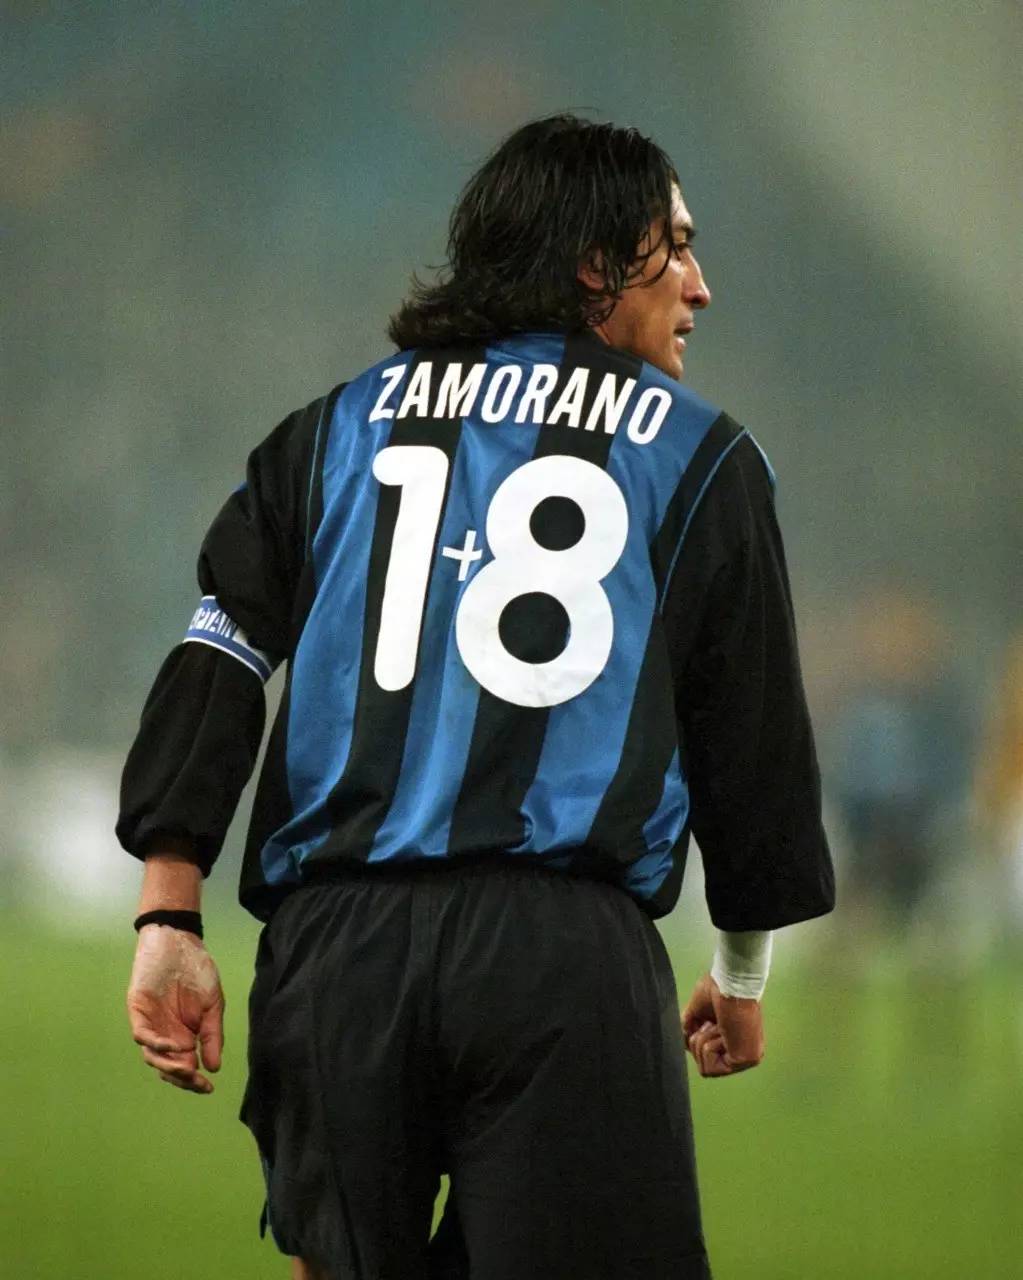 体育 正文 国米前锋萨莫拉诺在1996年加盟蓝黑军团,此前他总是穿着9号